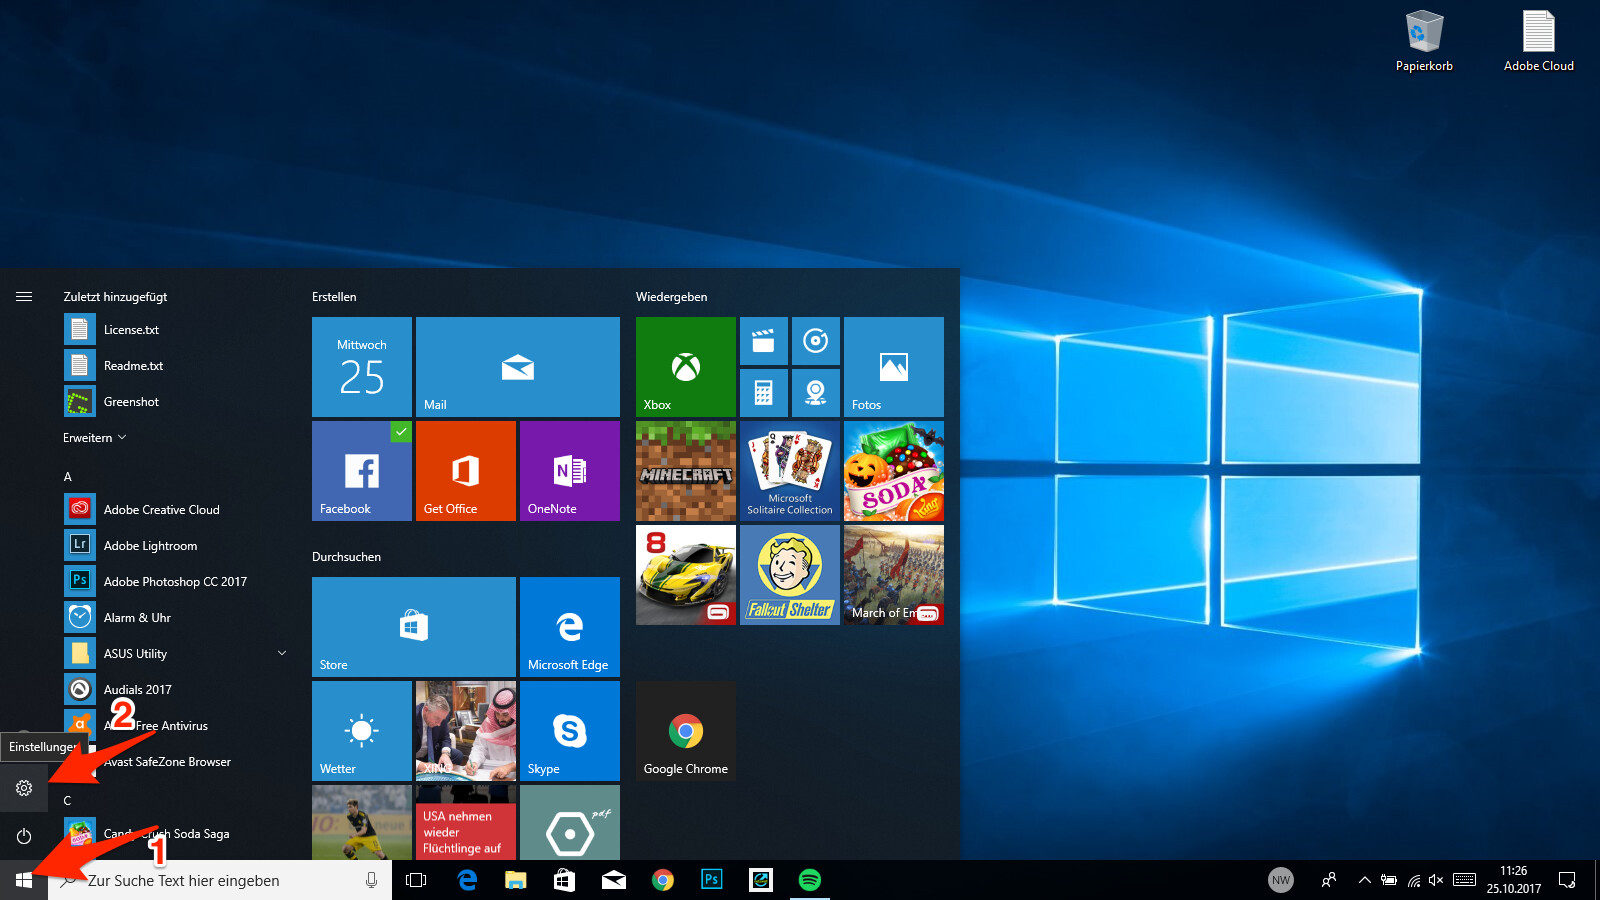 Windows 10 Startmenü reparieren: Wie Sie Probleme mit dem Startmenü in Windows 10 beheben können
Windows 7 Passwort zurücksetzen: Eine einfache Anleitung